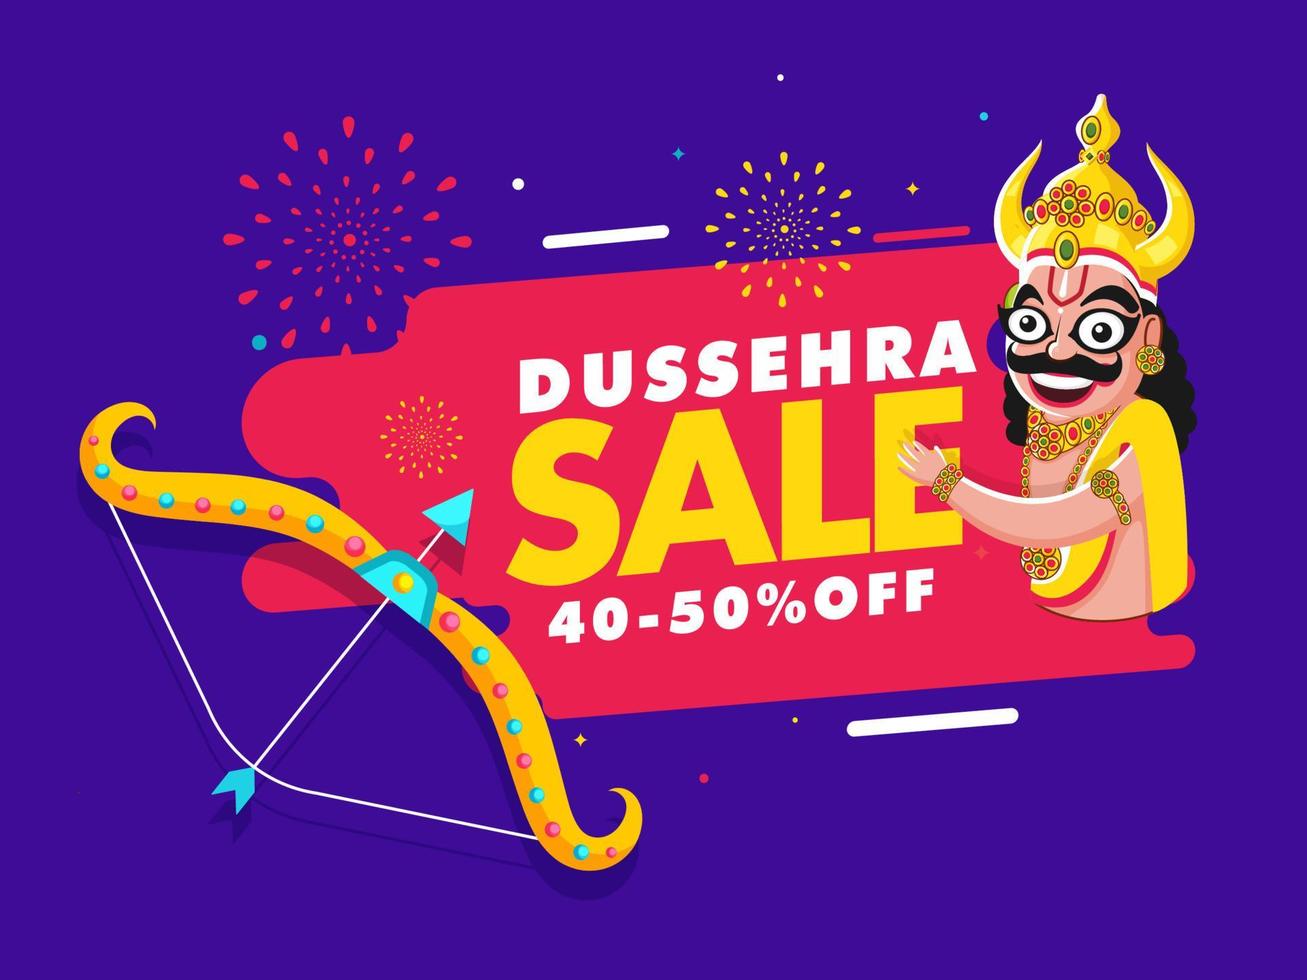 Dussehra försäljning affisch design med rabatt erbjudande och demon ravana karaktär på lila och rosa bakgrund. vektor